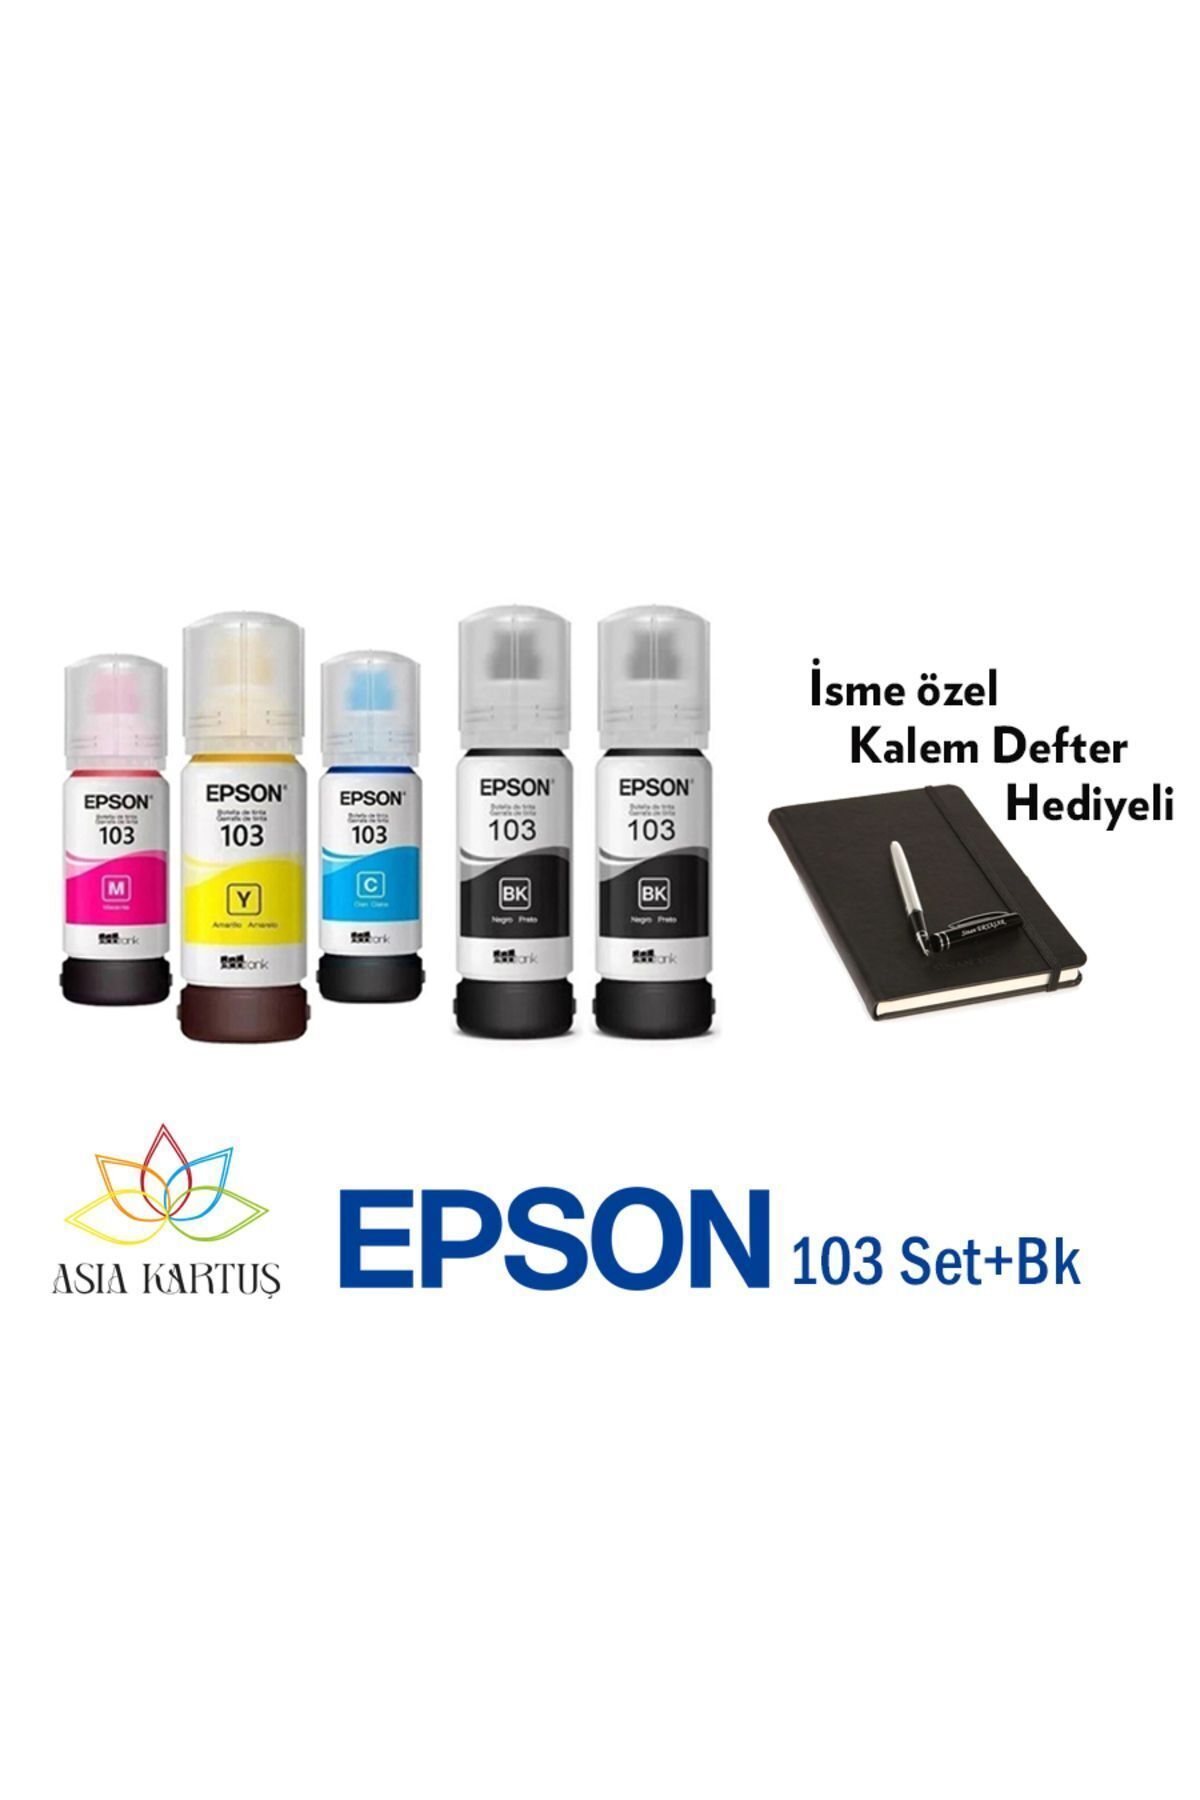 Epson Mürekkep 103 5 Renk +BK Set, Epson EcoTank L5290 Uyumlu Defter Hediyeli Mürekkep Seti